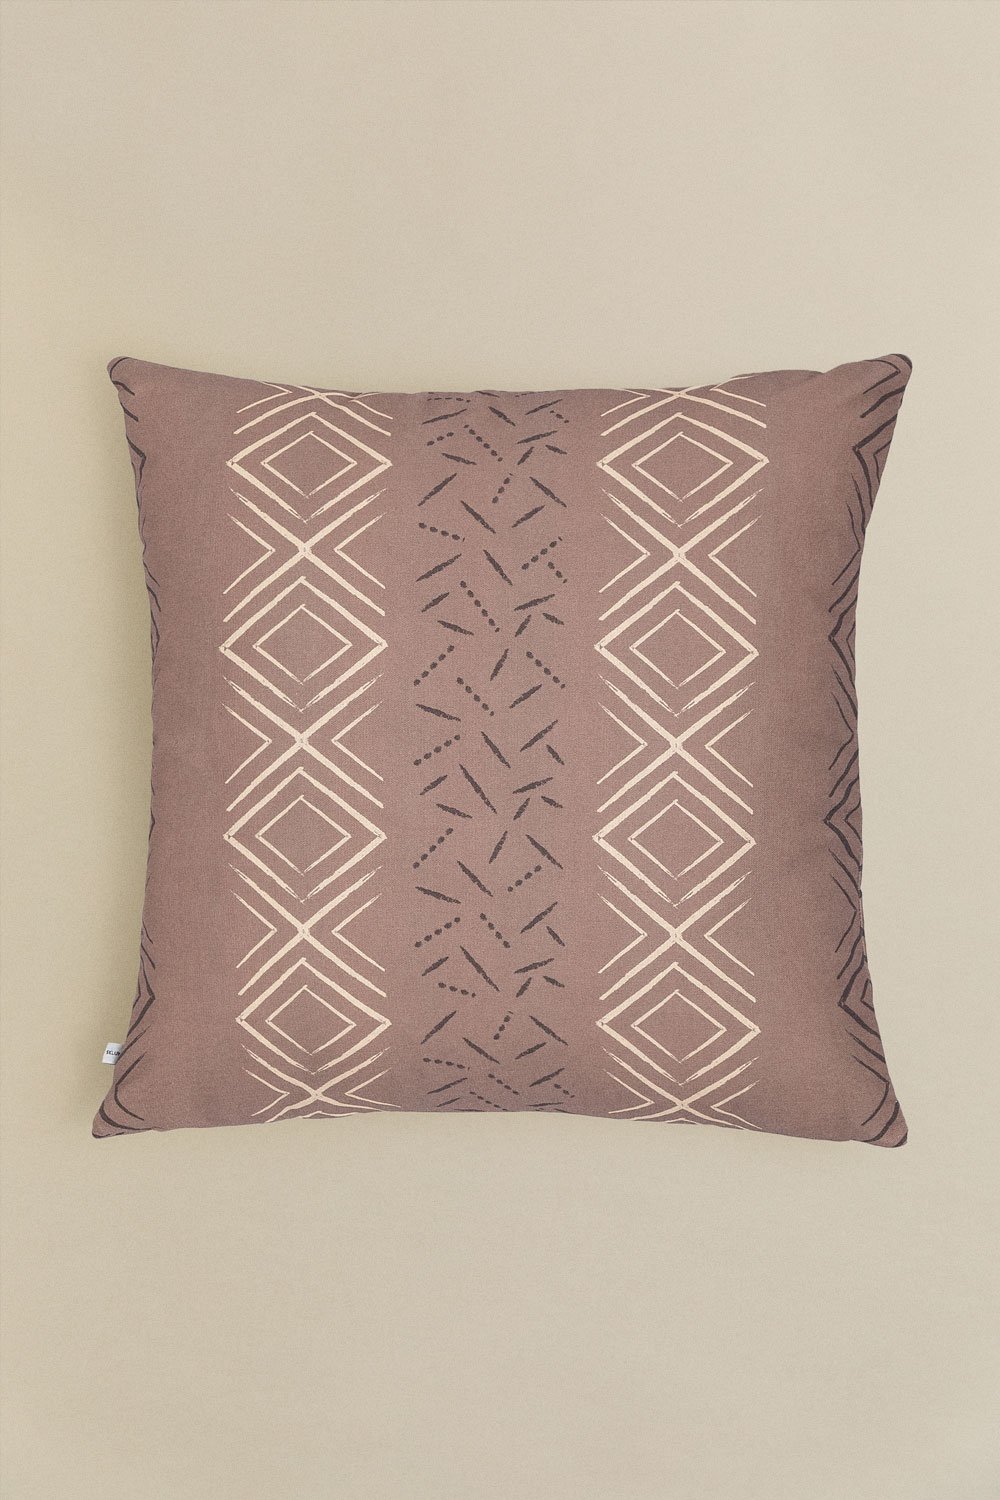 Federa per cuscino quadrata in cotone (60x60 cm) Tadjou Style, immagine della galleria 1